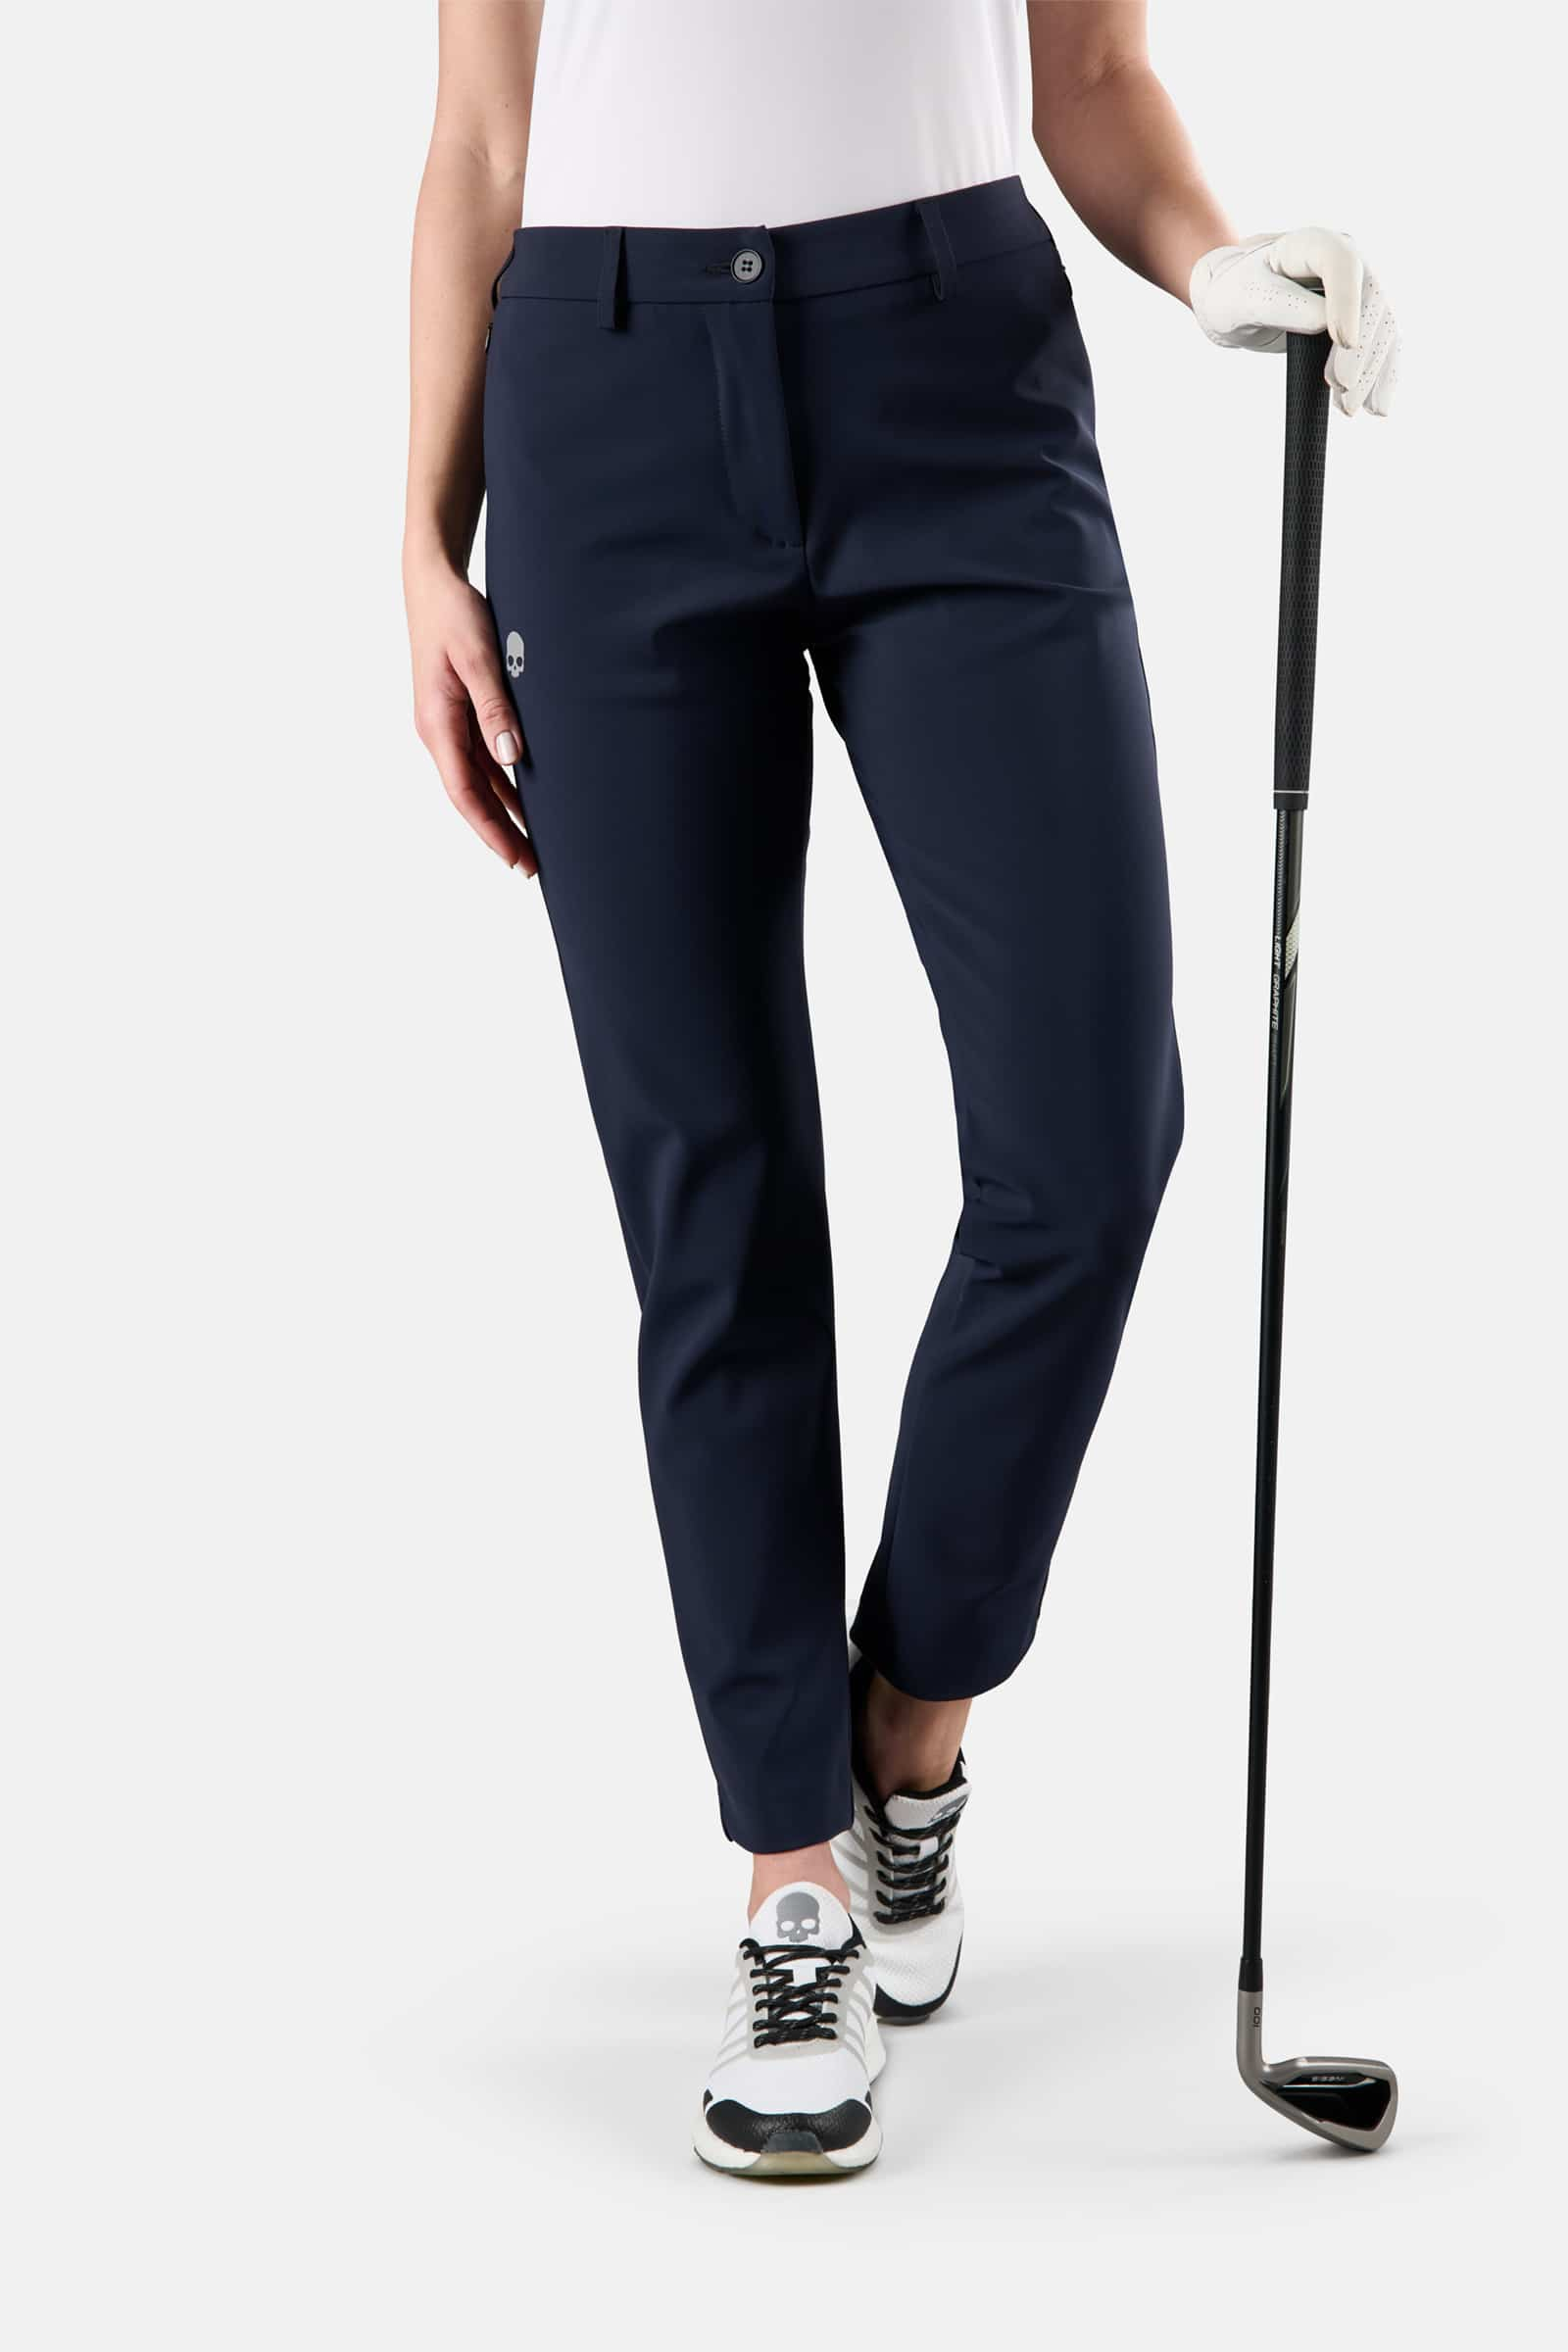 WINTER GOLF TECH PANTS - BLUE NAVY - Hydrogen - Luxury Sportwear